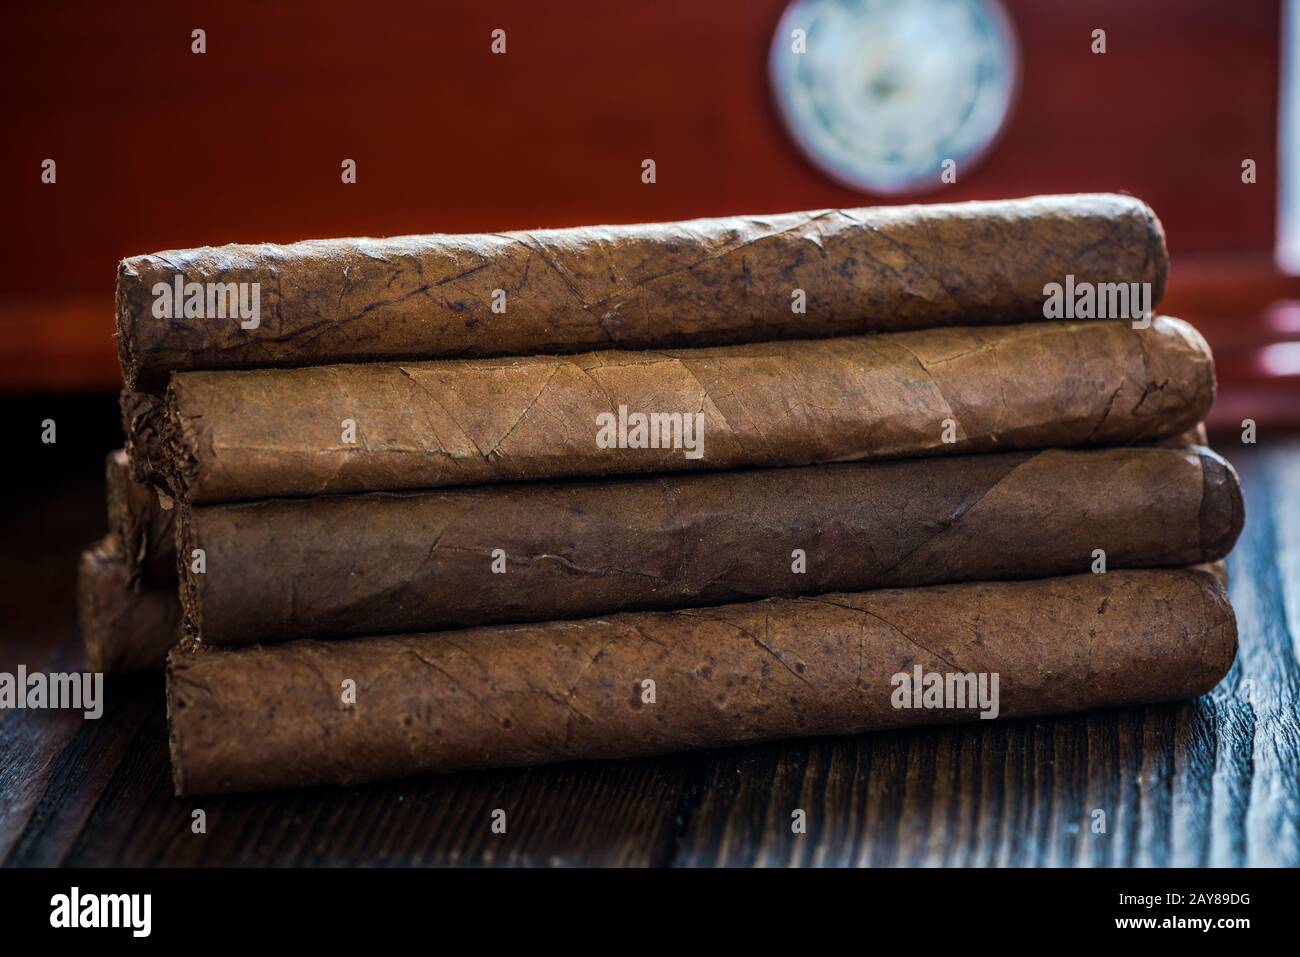 Cuban cigars and wooden humidor Stock Photo